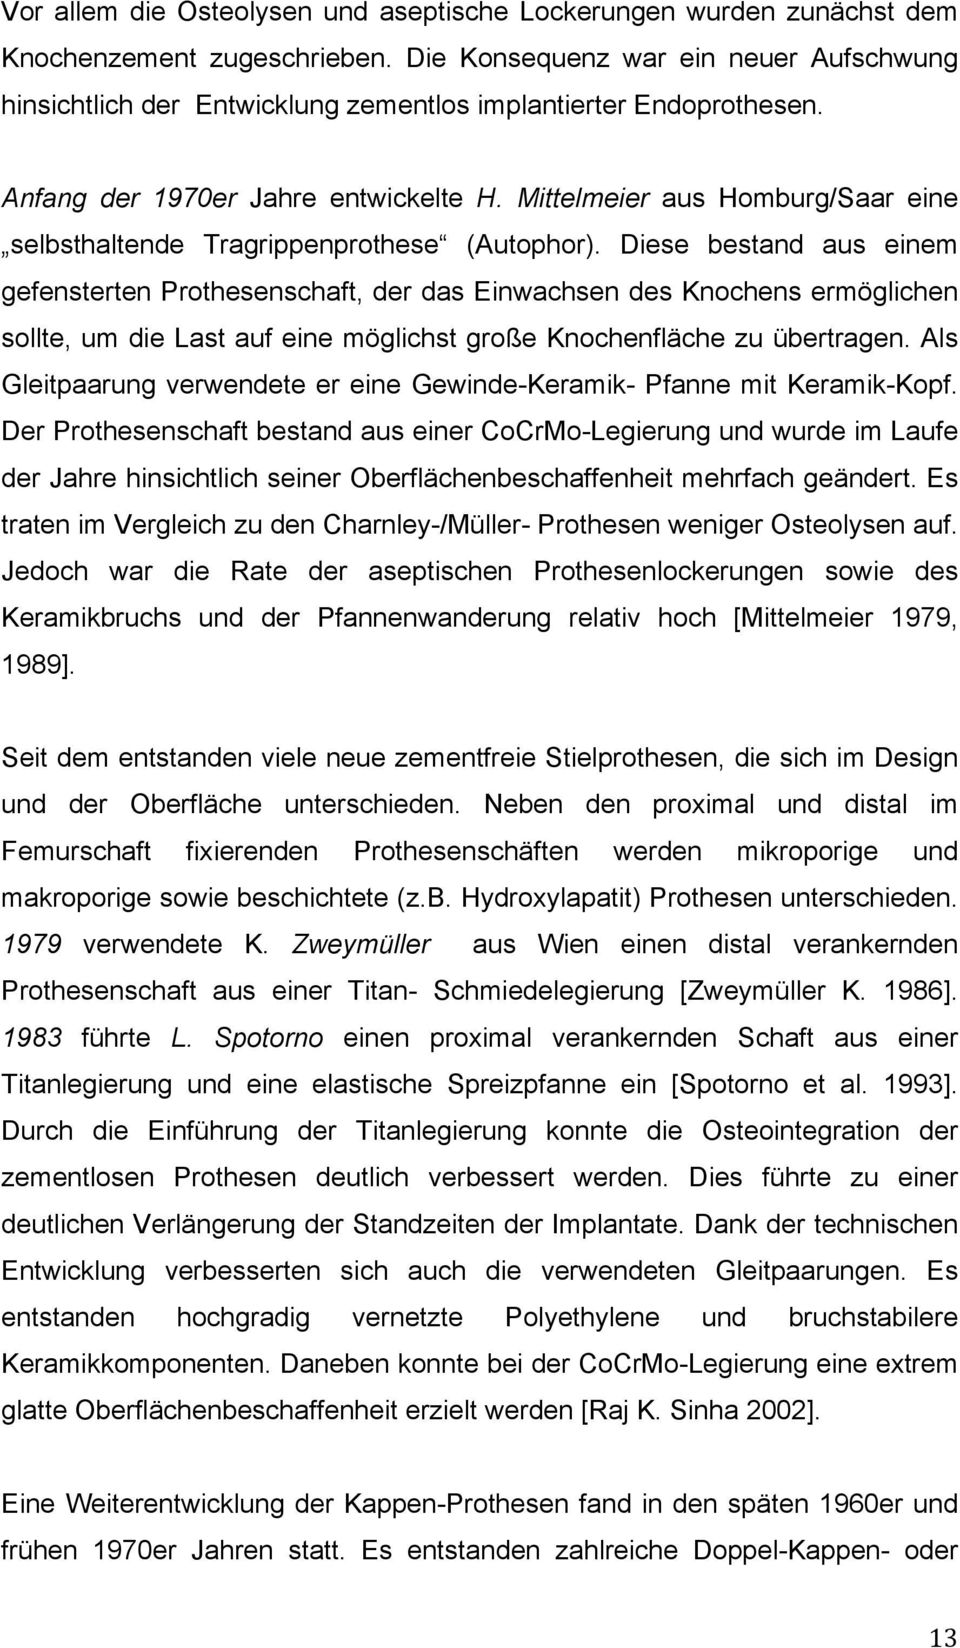 Mittelmeier aus Homburg/Saar eine selbsthaltende Tragrippenprothese (Autophor).